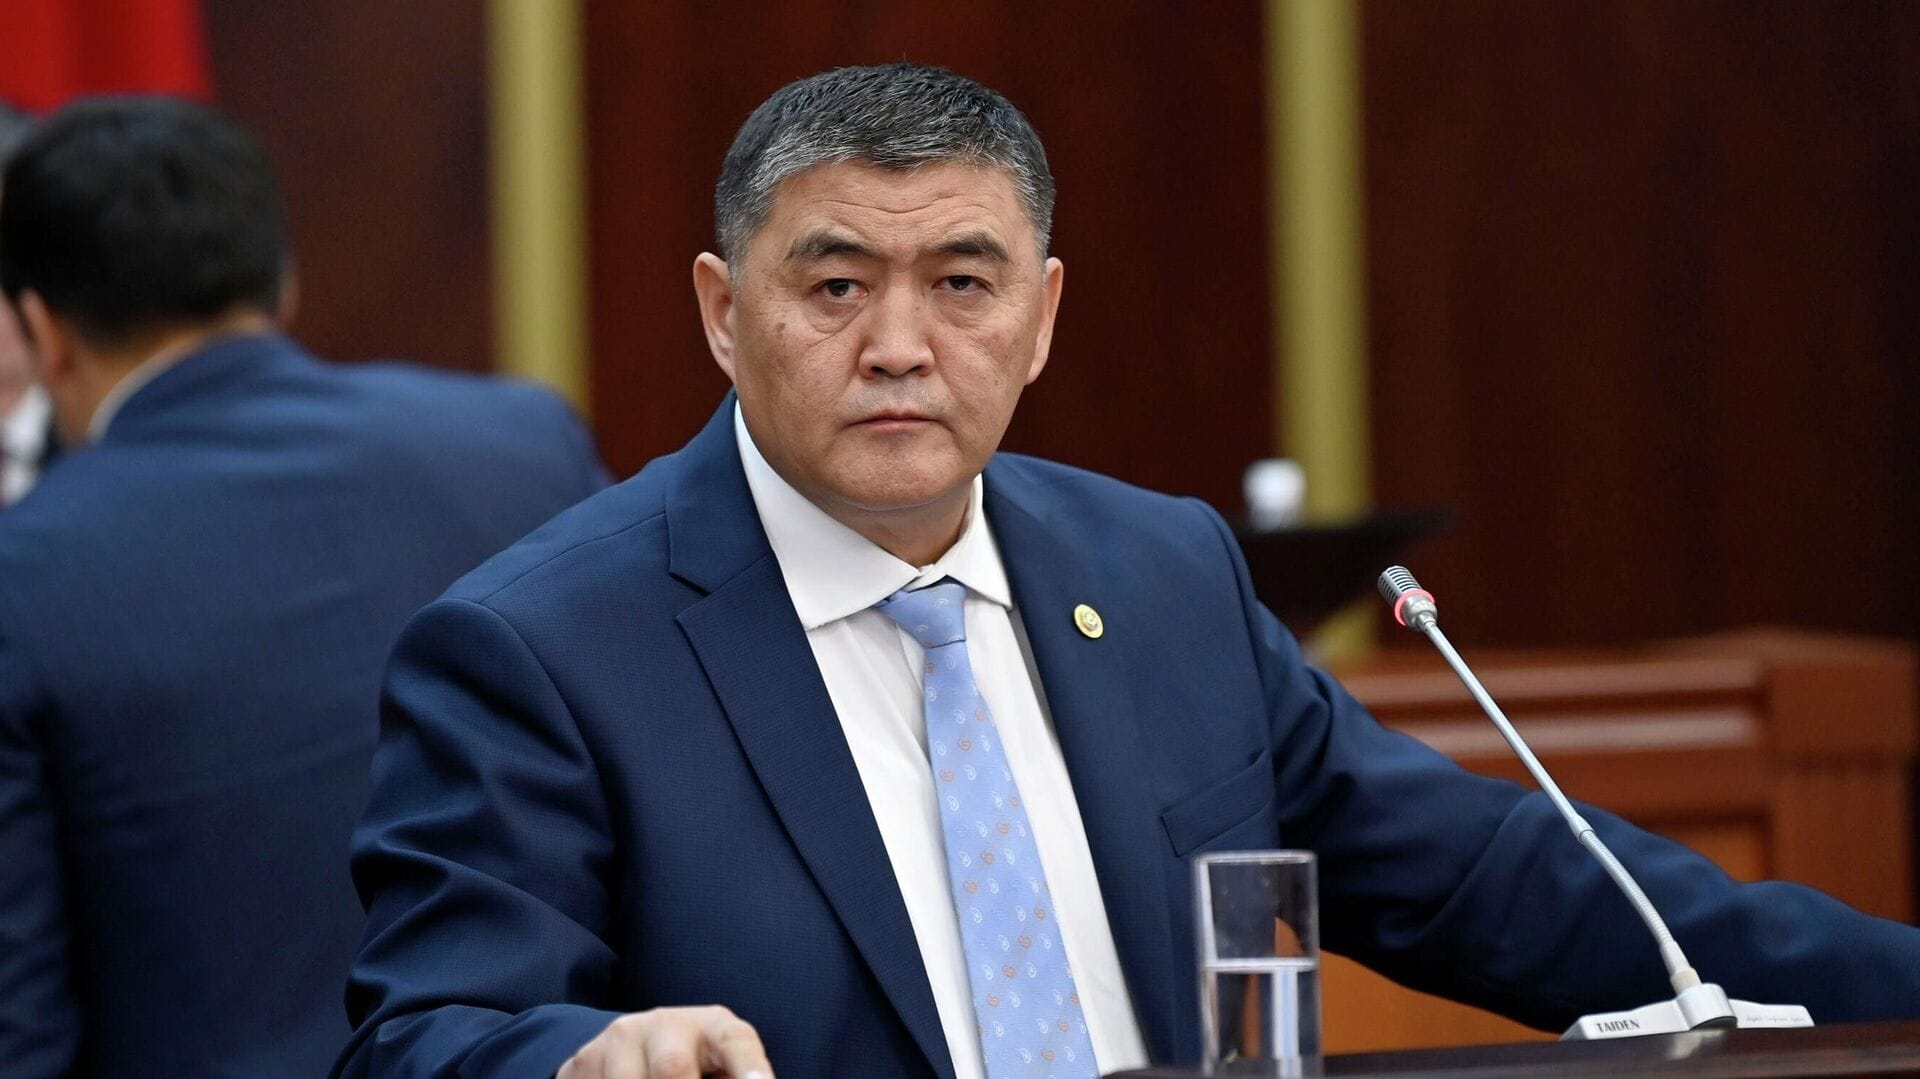 Ташиев вступился за граждан Таджикистана, комментируя теракт в «Крокус Сити Холле»